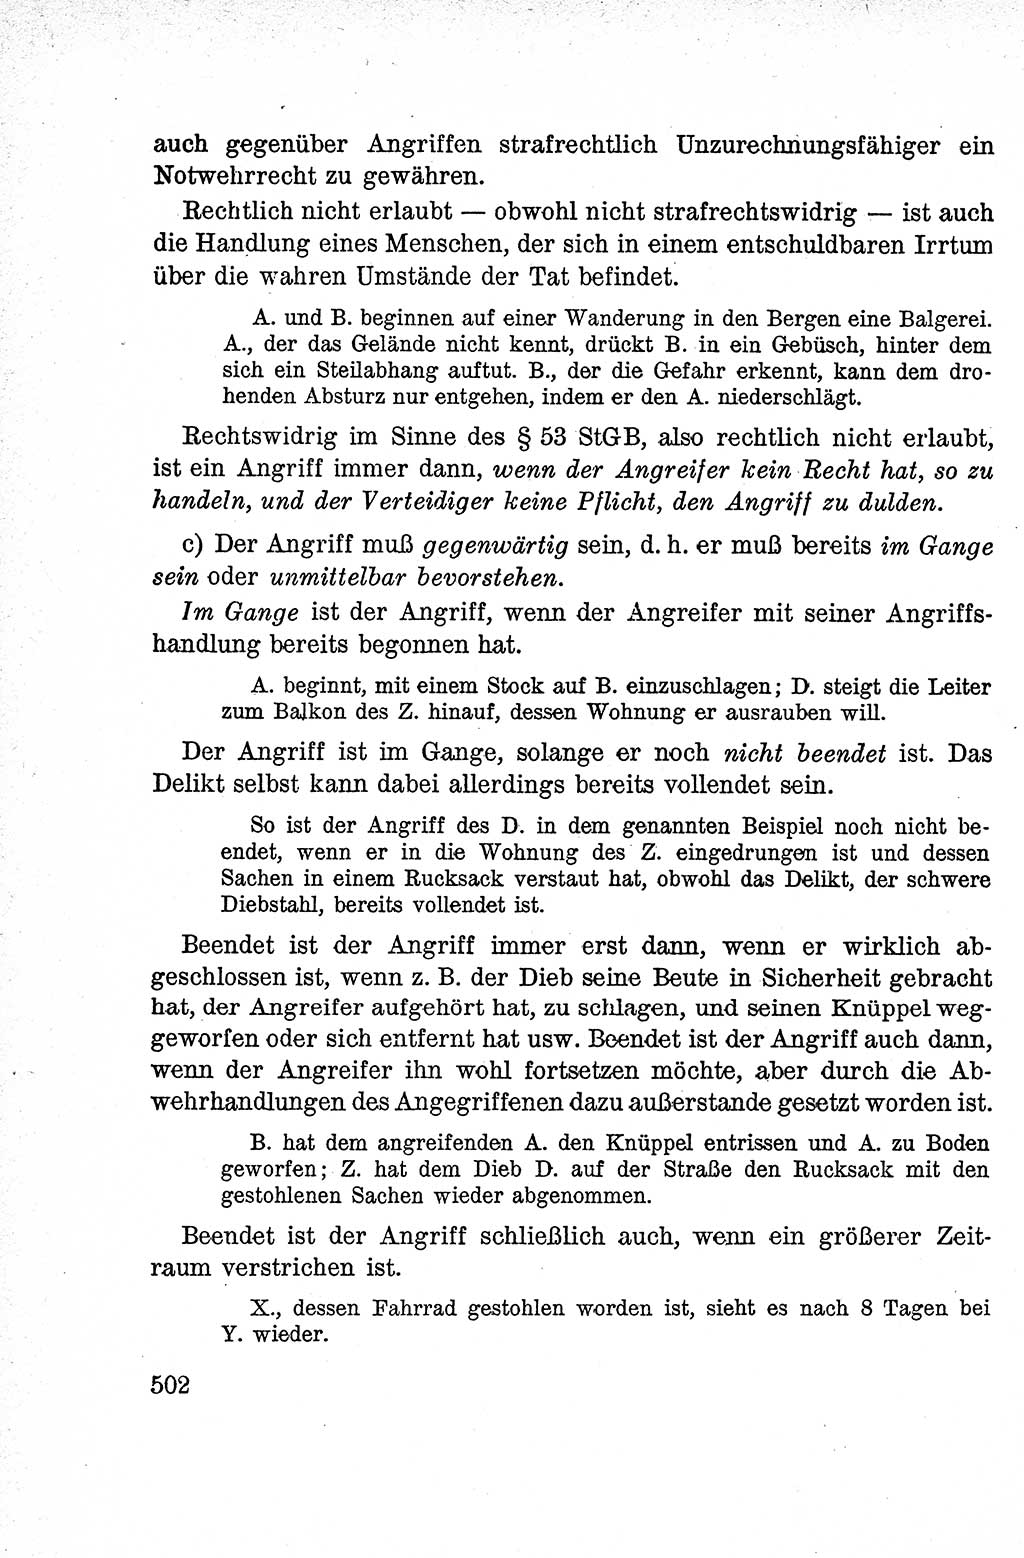 Lehrbuch des Strafrechts der Deutschen Demokratischen Republik (DDR), Allgemeiner Teil 1959, Seite 502 (Lb. Strafr. DDR AT 1959, S. 502)